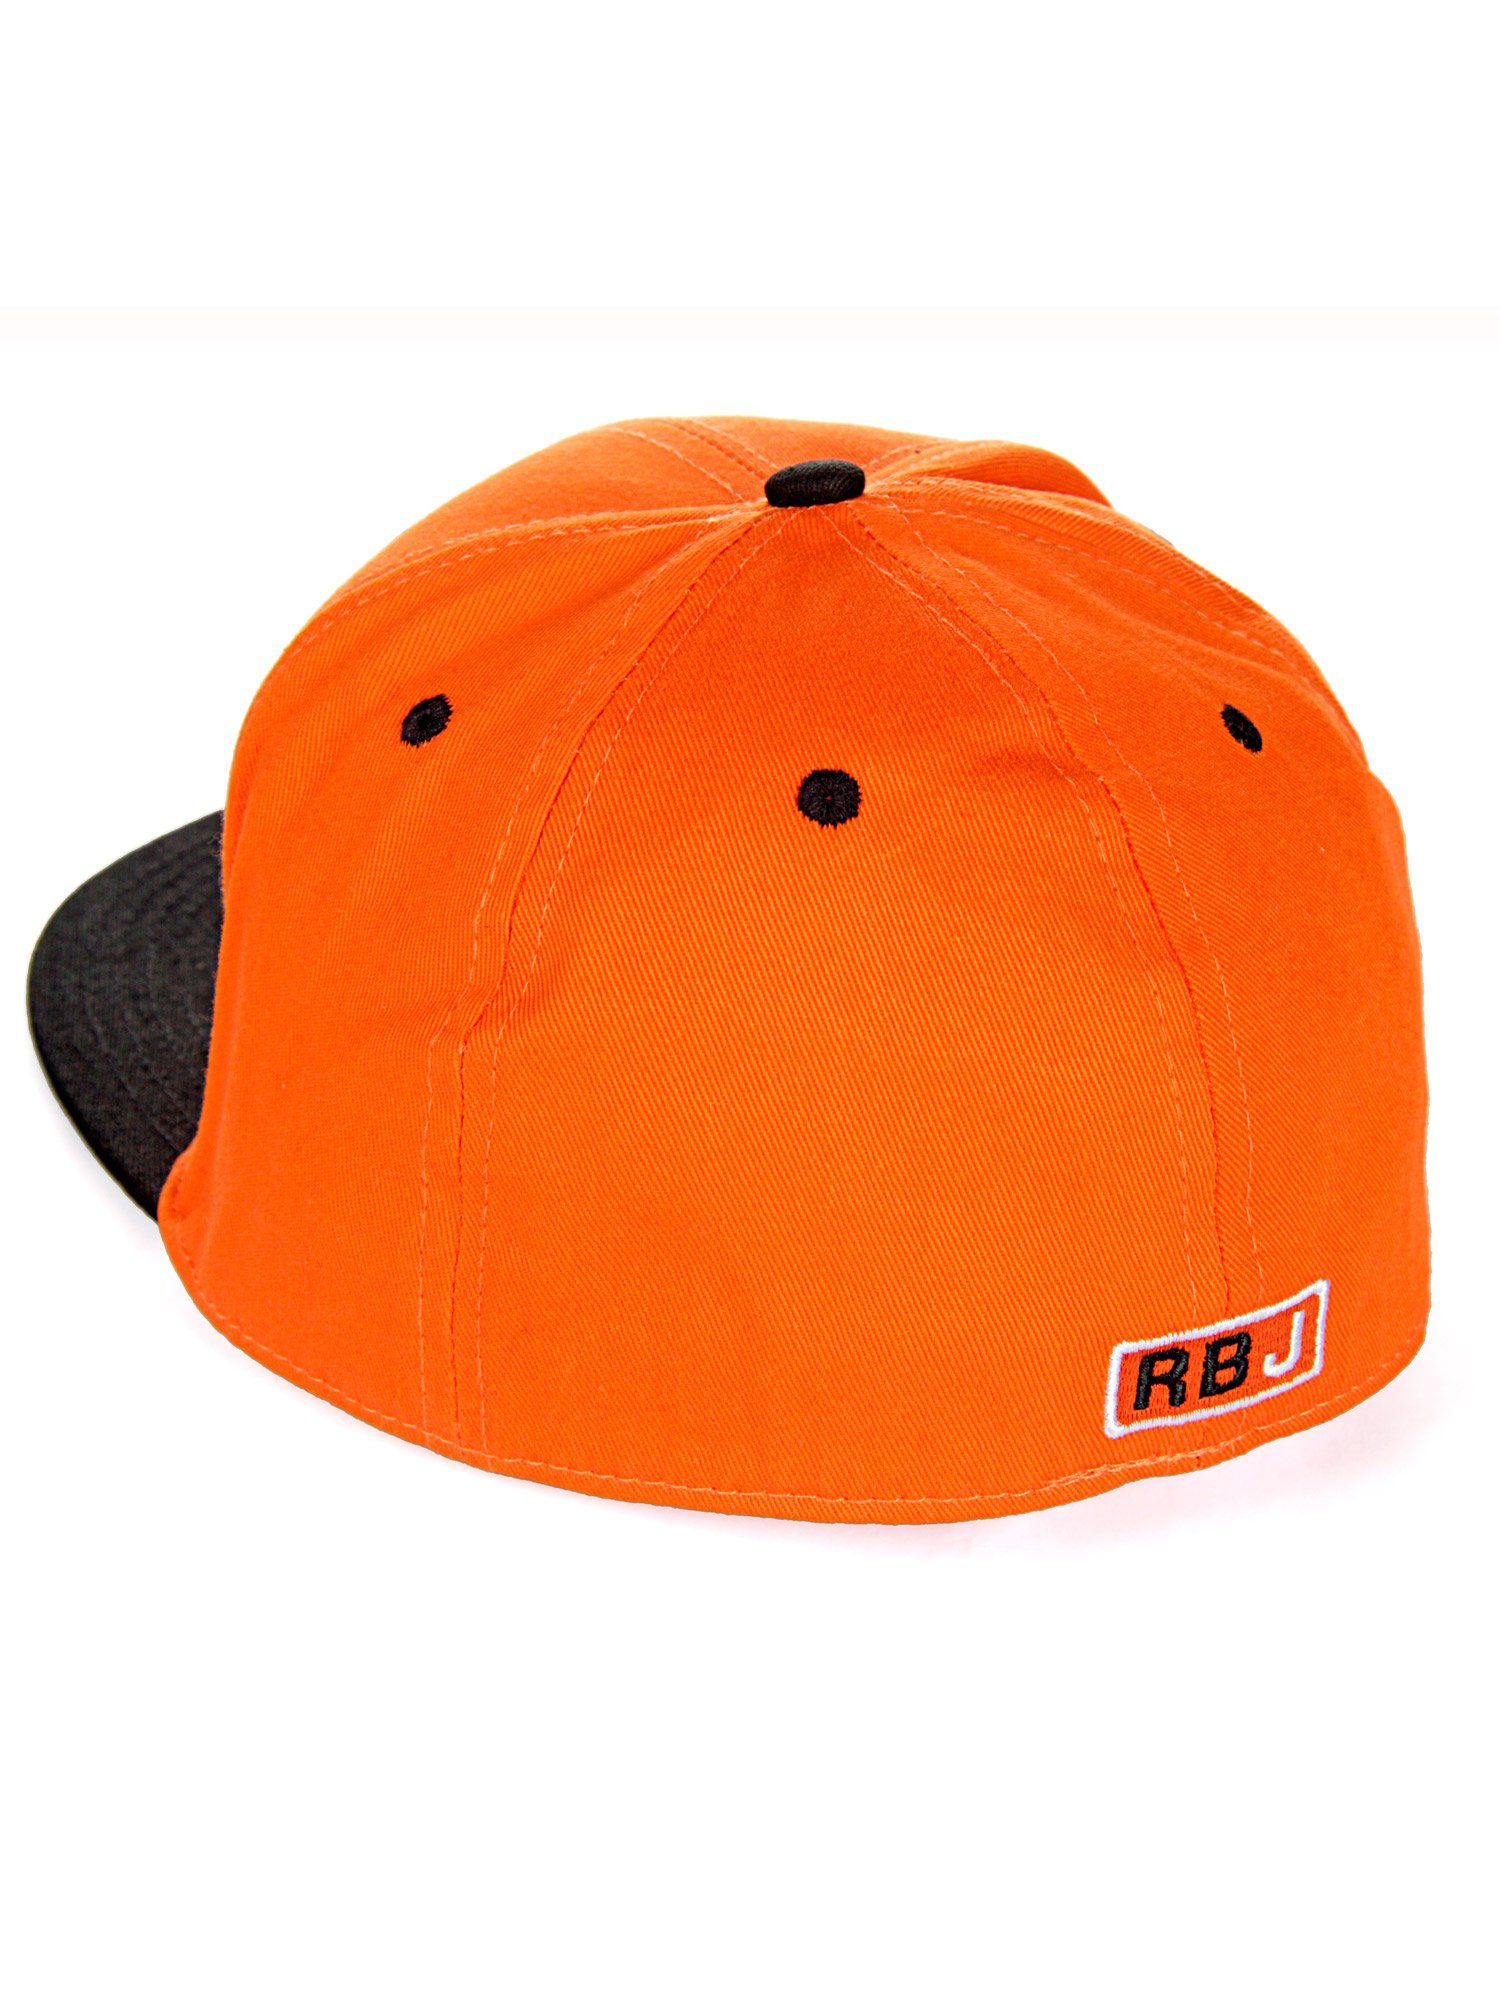 Schirm Baseball Durham Cap RedBridge orange-schwarz mit kontrastfarbigem